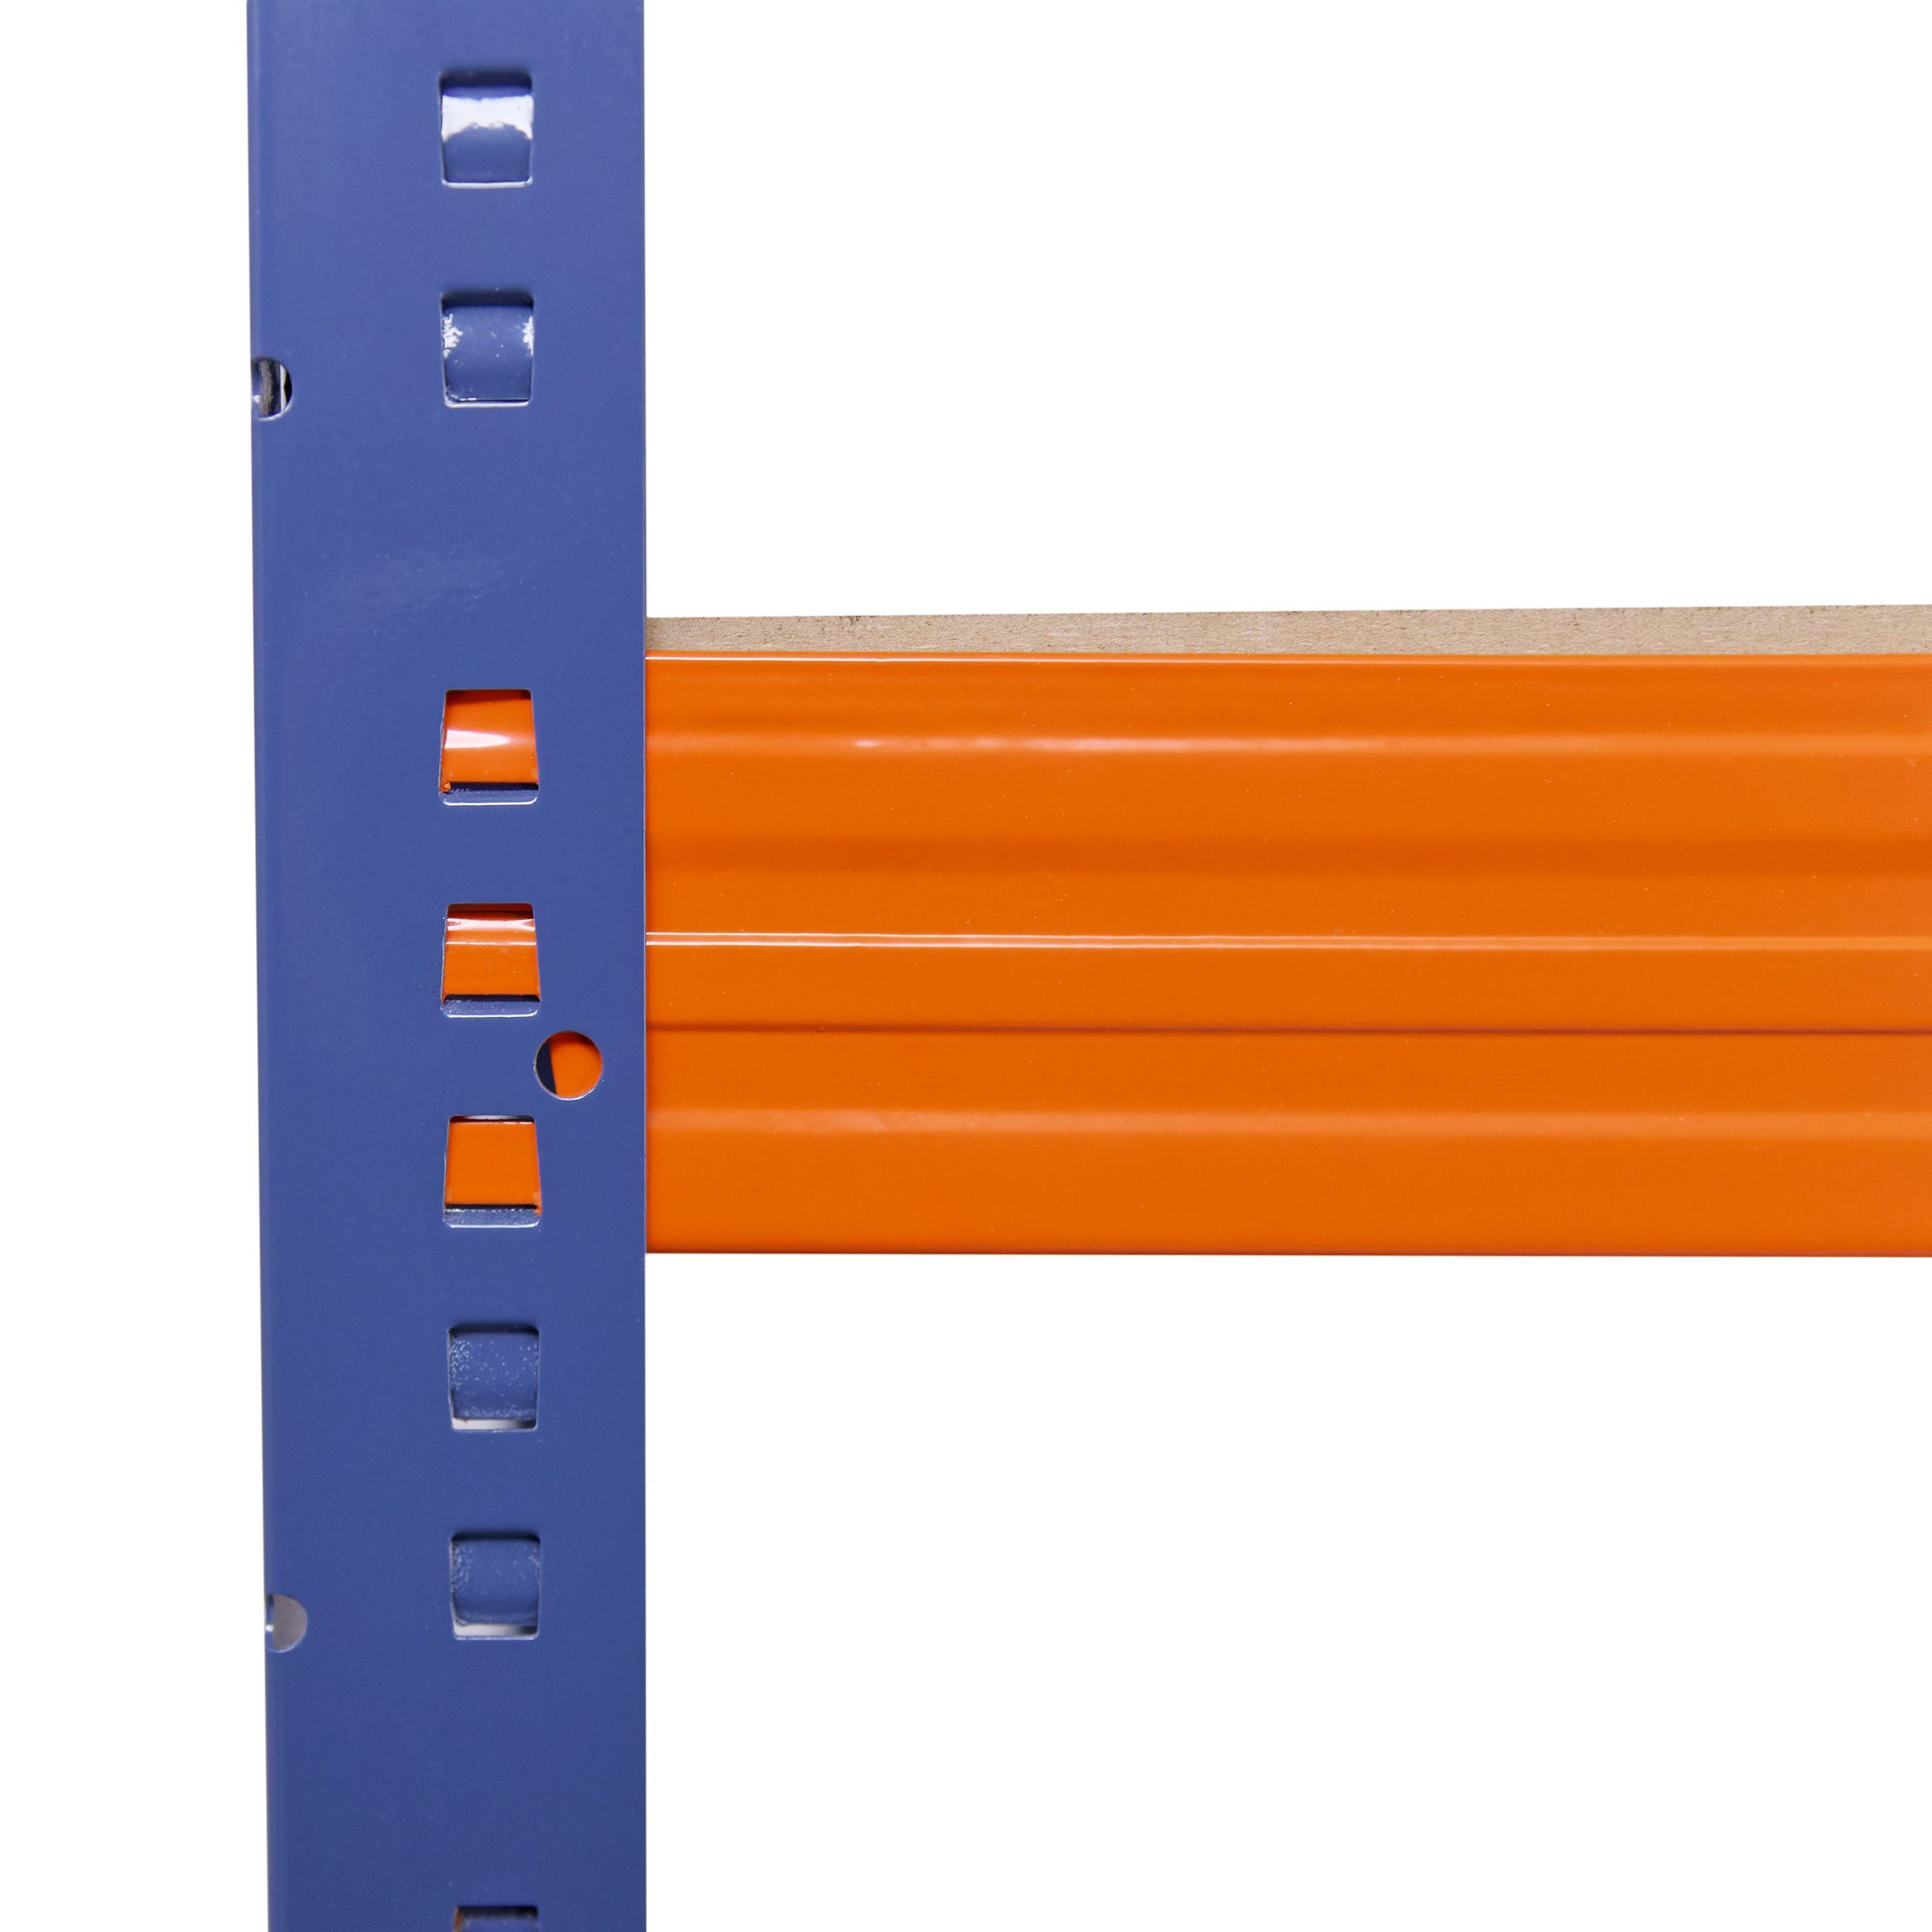 Regal Tragkraft, Werkstattregal Steckregal 200kg 200x90x45cm 5 Garagenregal, Regale je blau-orange, als Böden shelfplaza Kellerregal, Metall Metallregal Lagerregal, Schwerlastregal PROFI, mit &